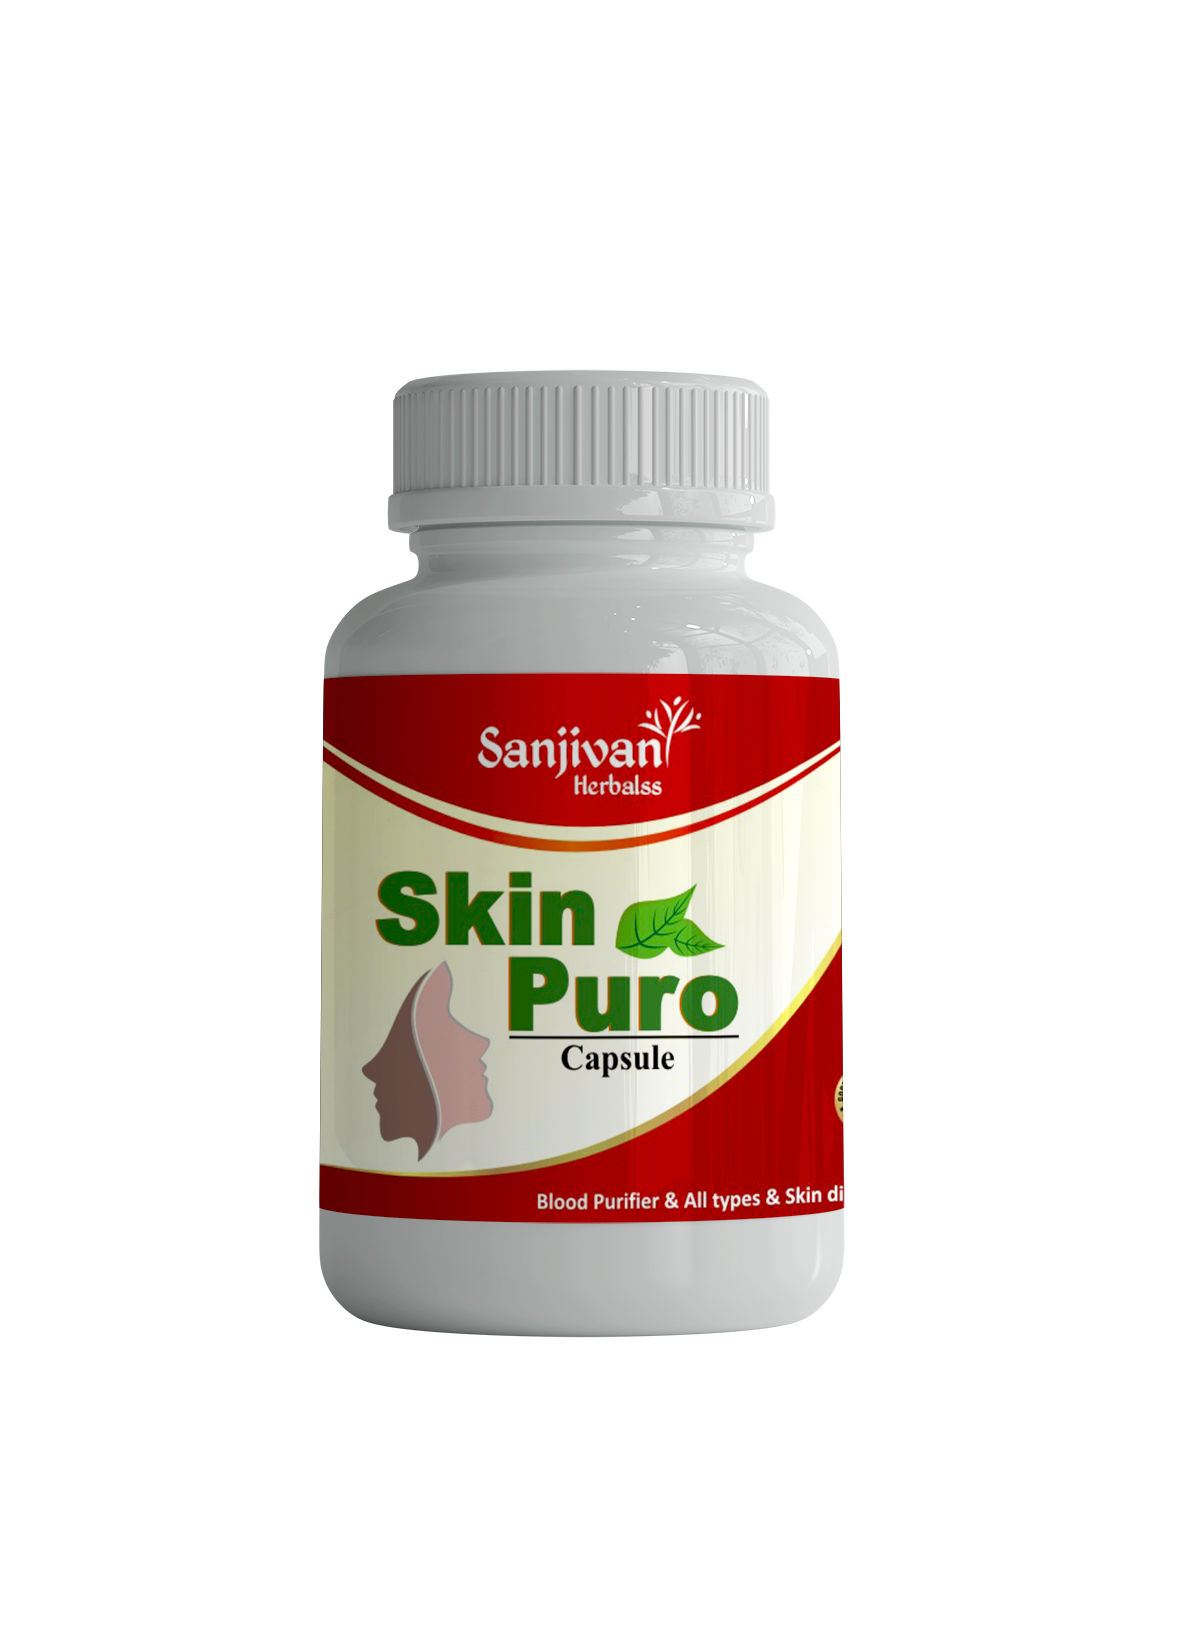 Skin Puro capsule